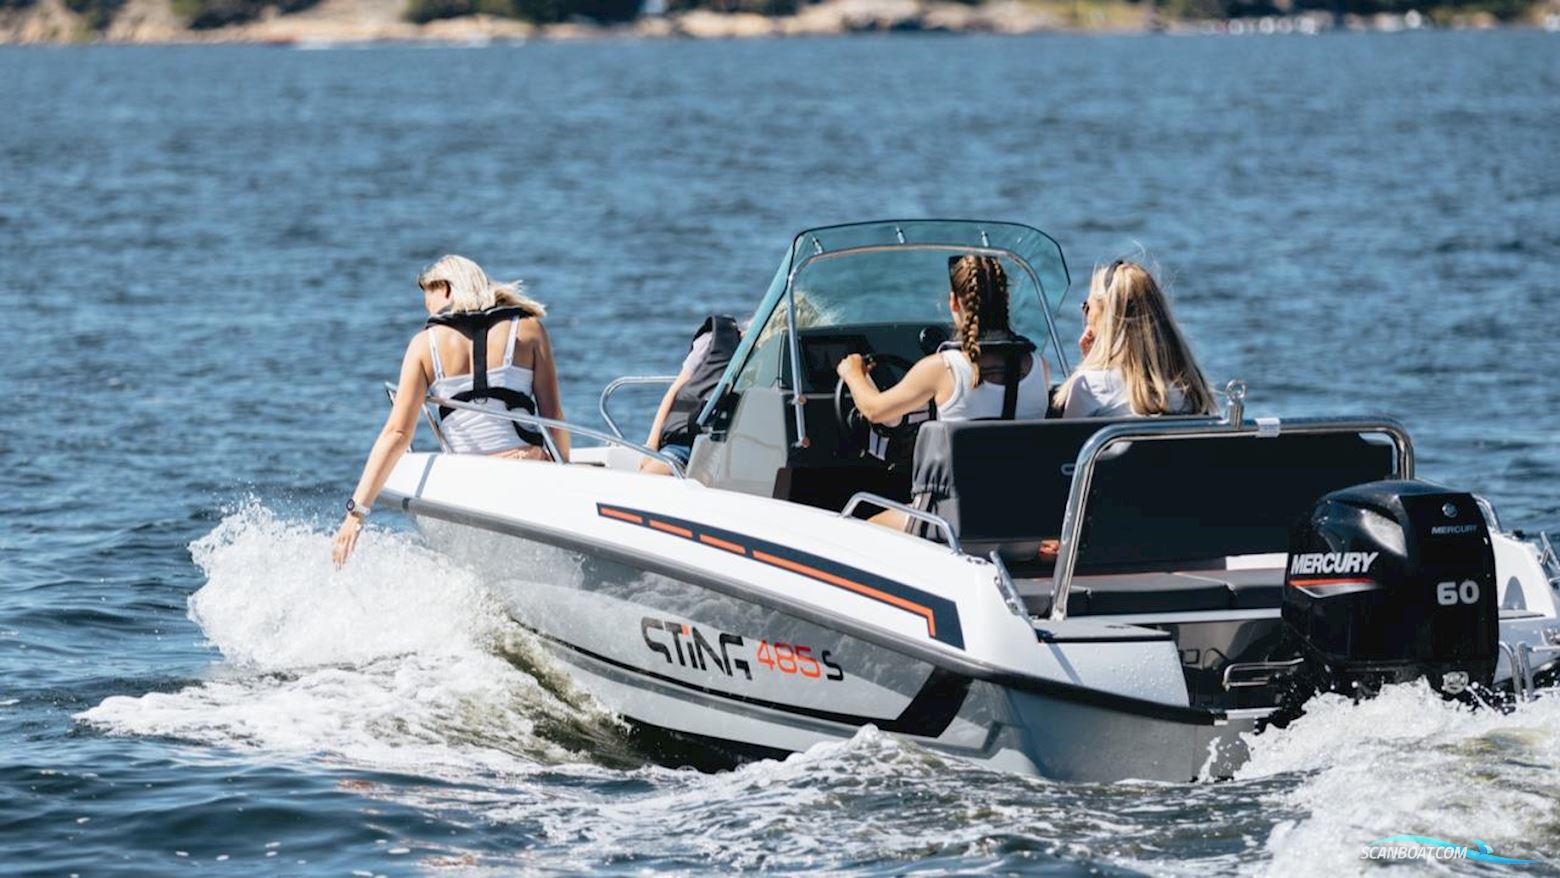 STING 485 S Motorbåt 2022, med Mercury motor, Sverige